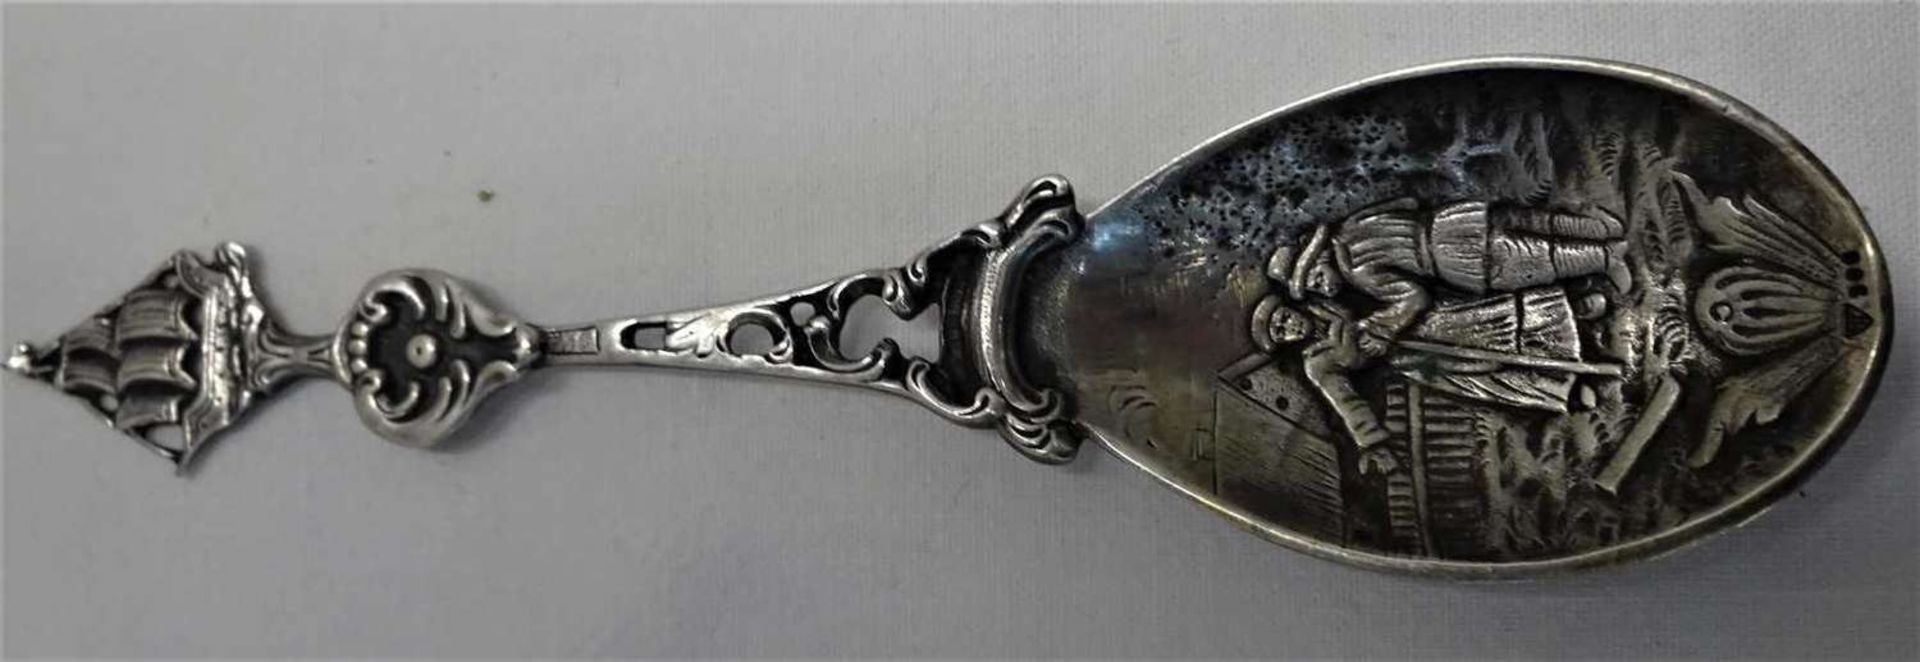 Silber Zierlöffel, 19. Jhrdt., Silberpunze 800 HF, Länge ca. 15 cmSilver decorative spoon, 19th c